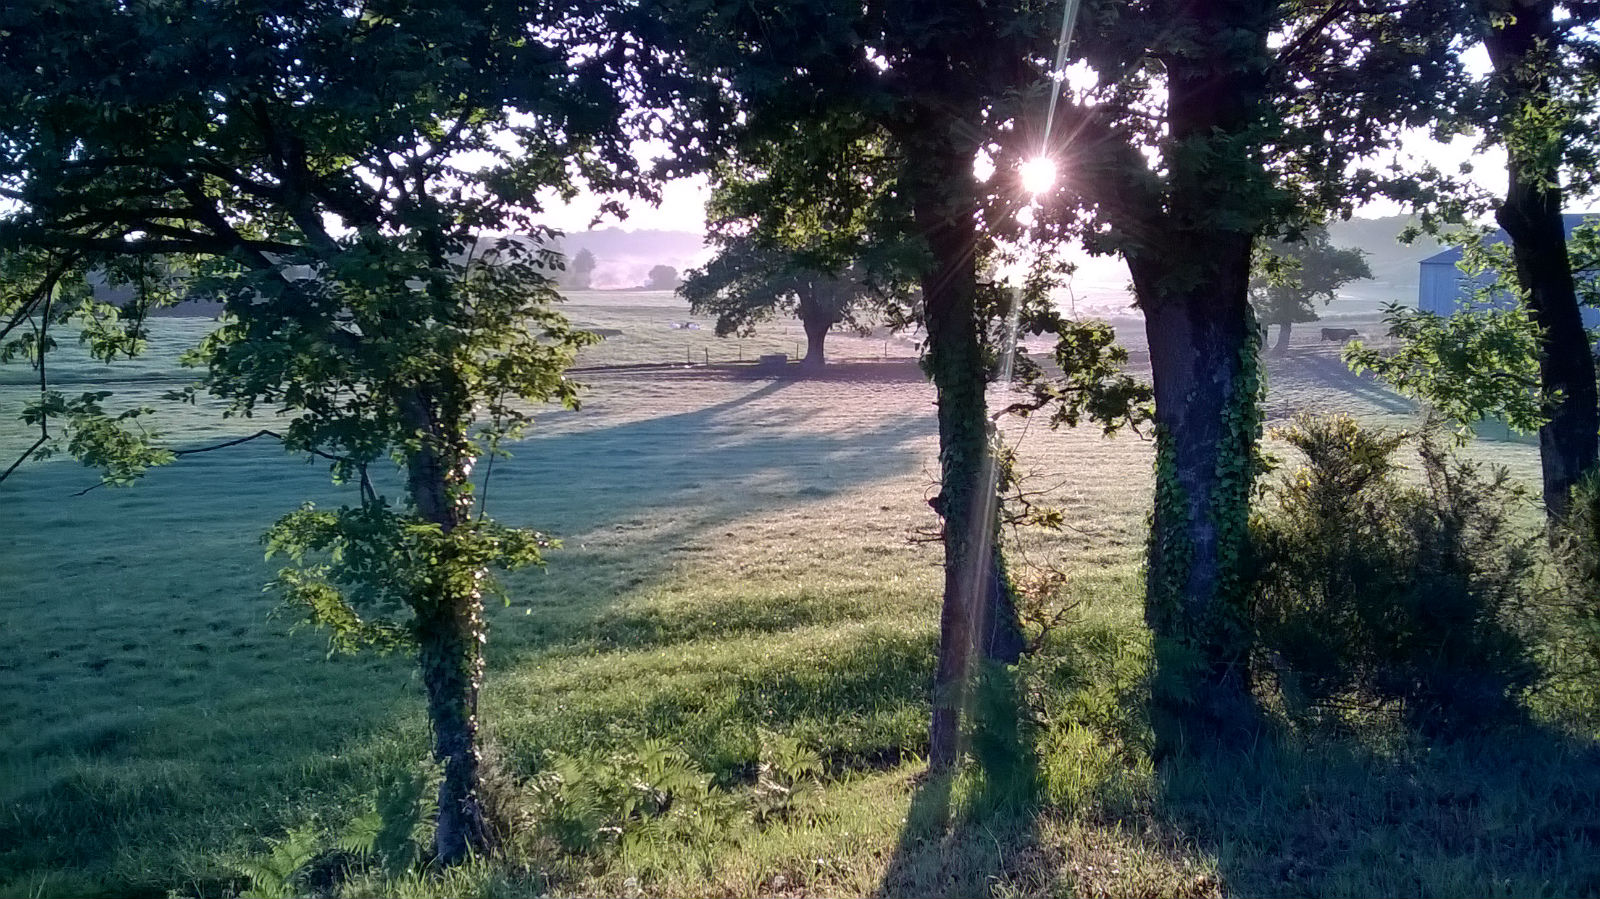 Le soleil se lève sur le champs des vaches.